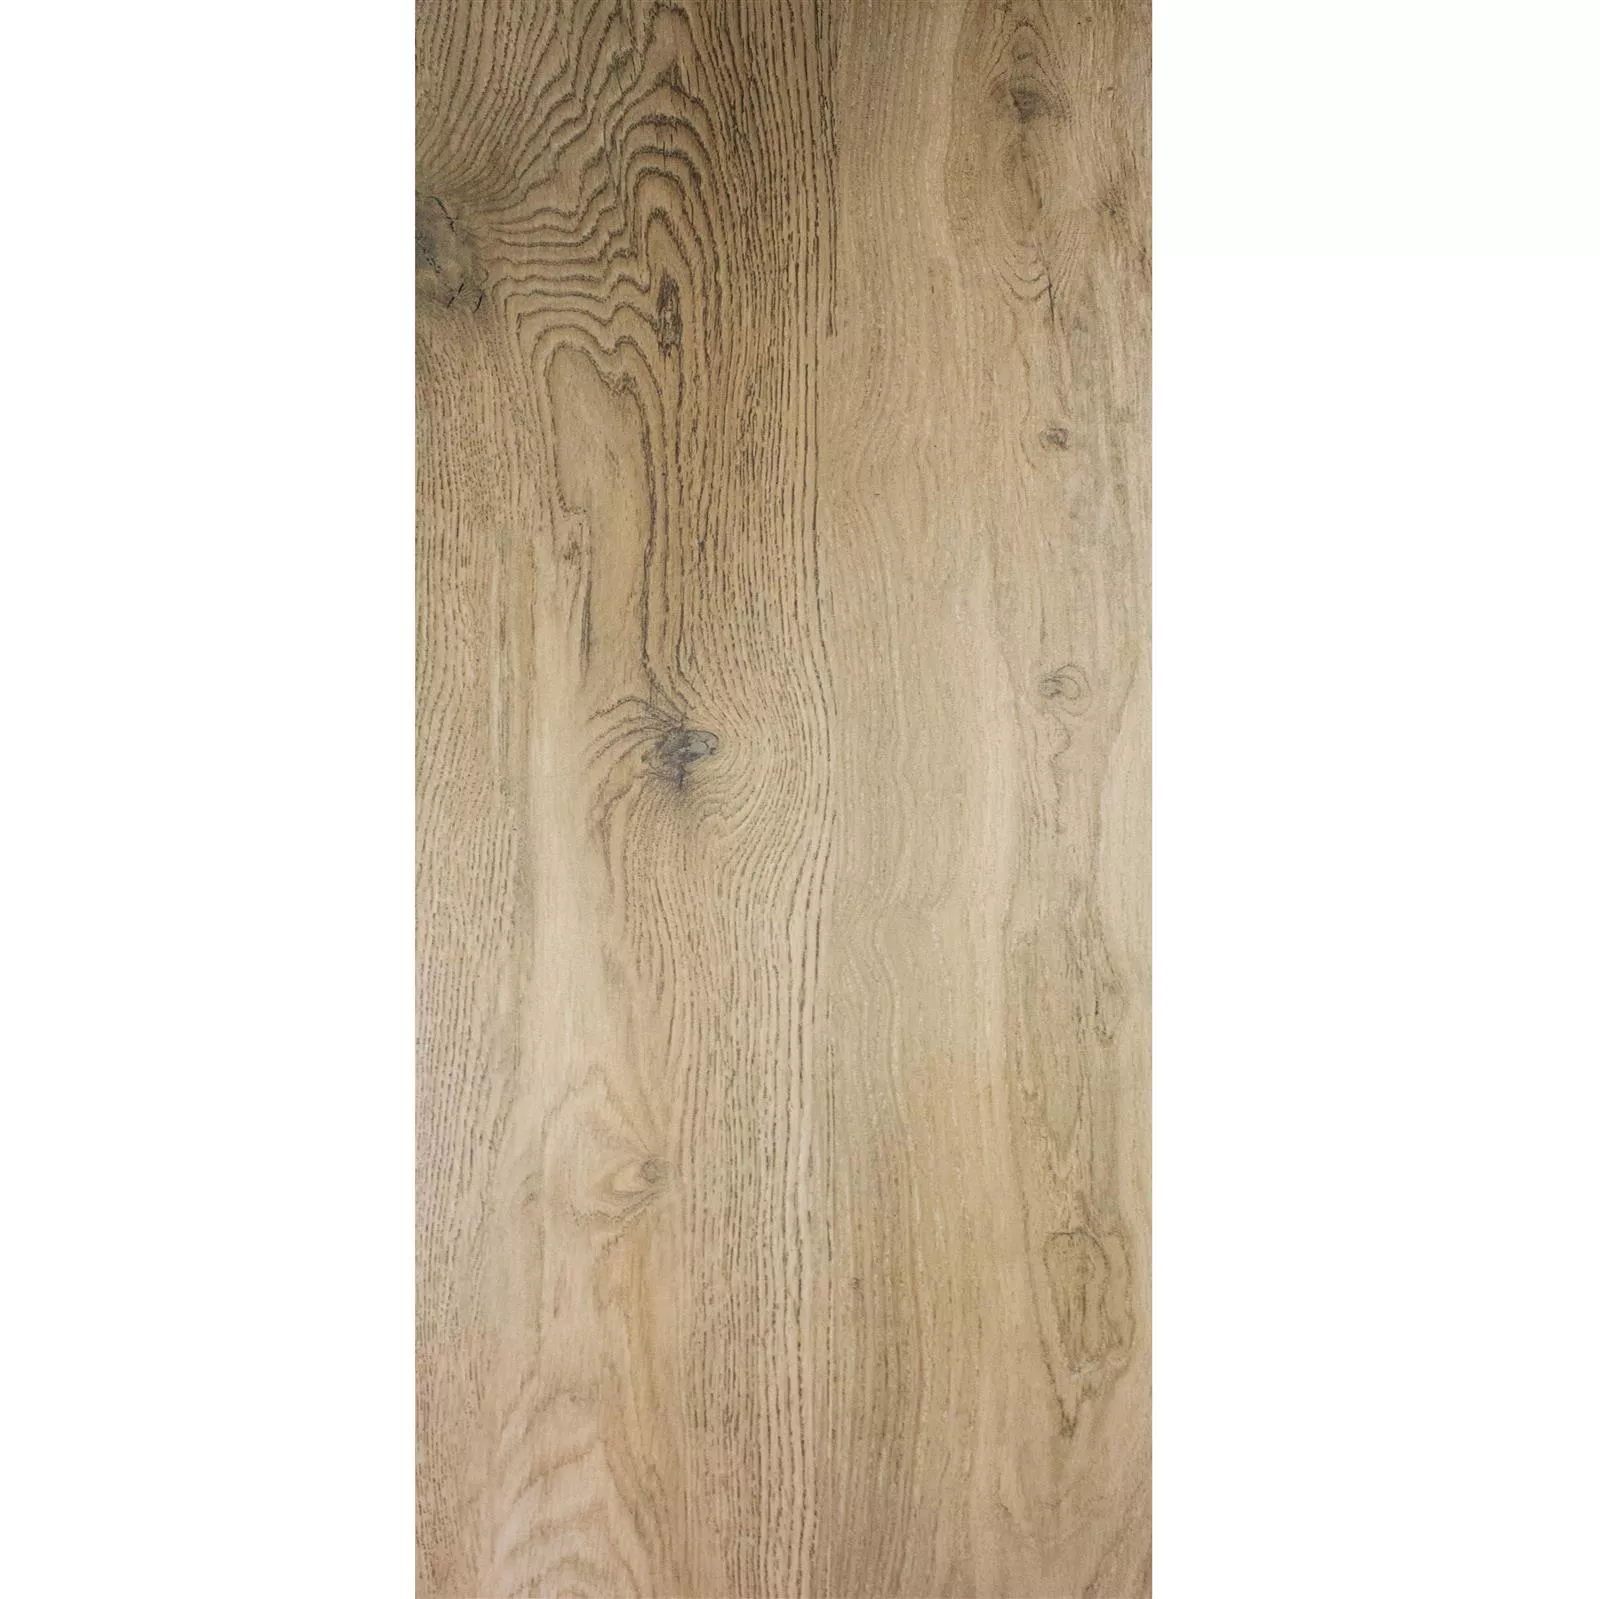 Próbka Płytki Podłogowe Wygląd Drewna Linsburg Ciemnobeżowy 30x120cm